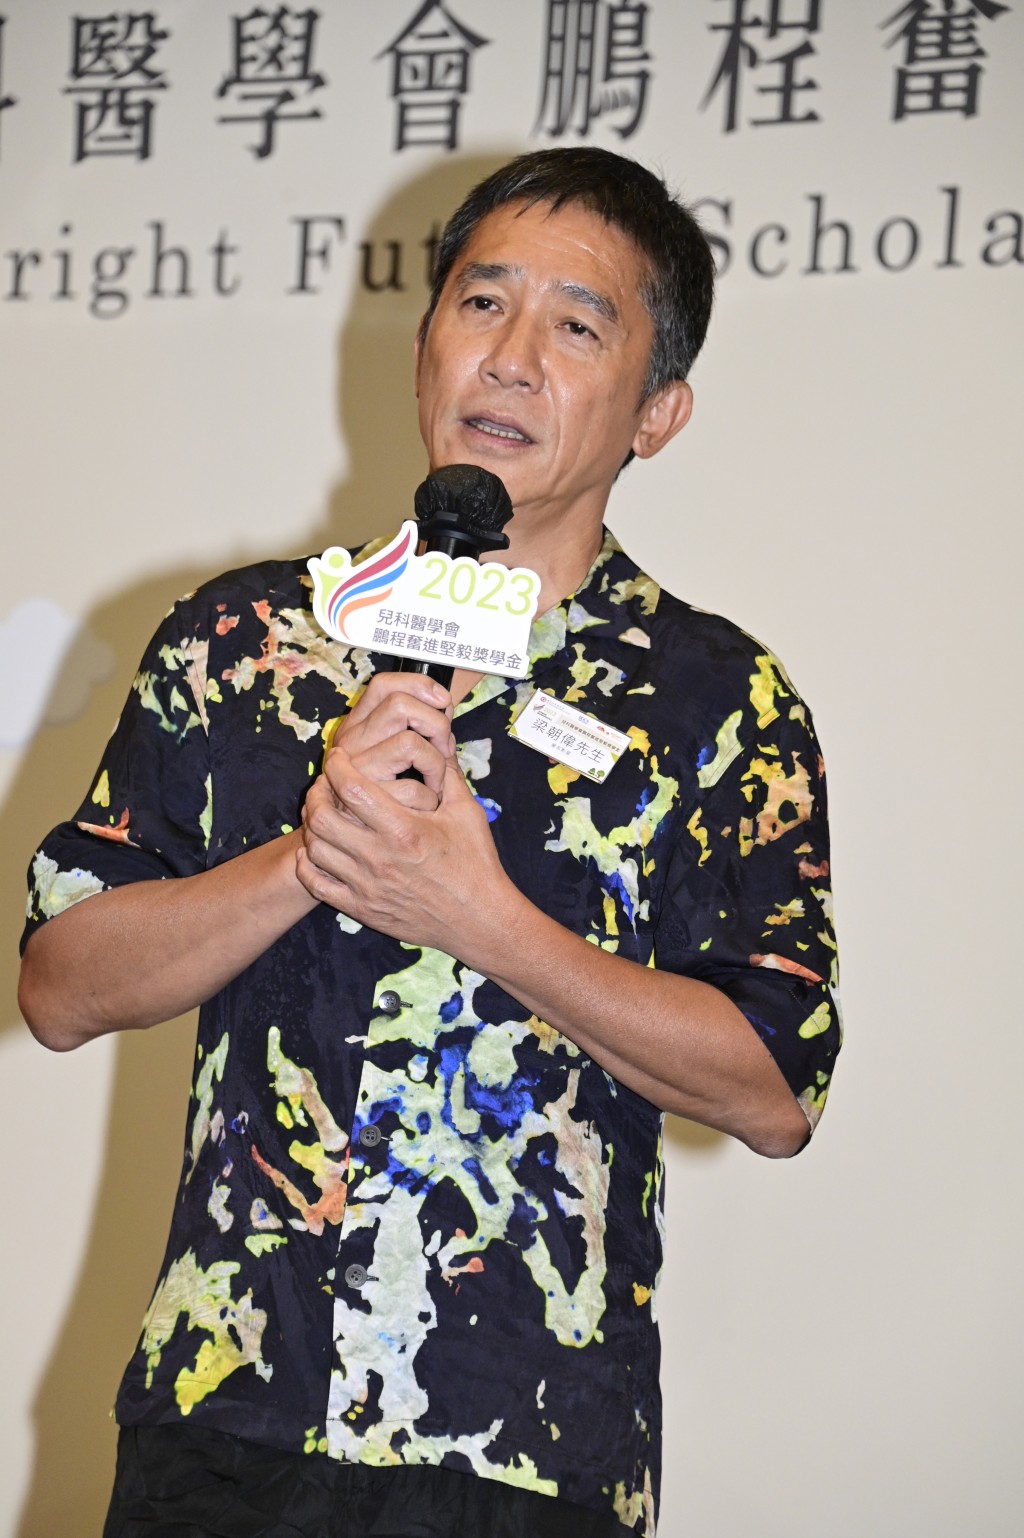 梁朝偉在活動上表示自己來自基層家庭。